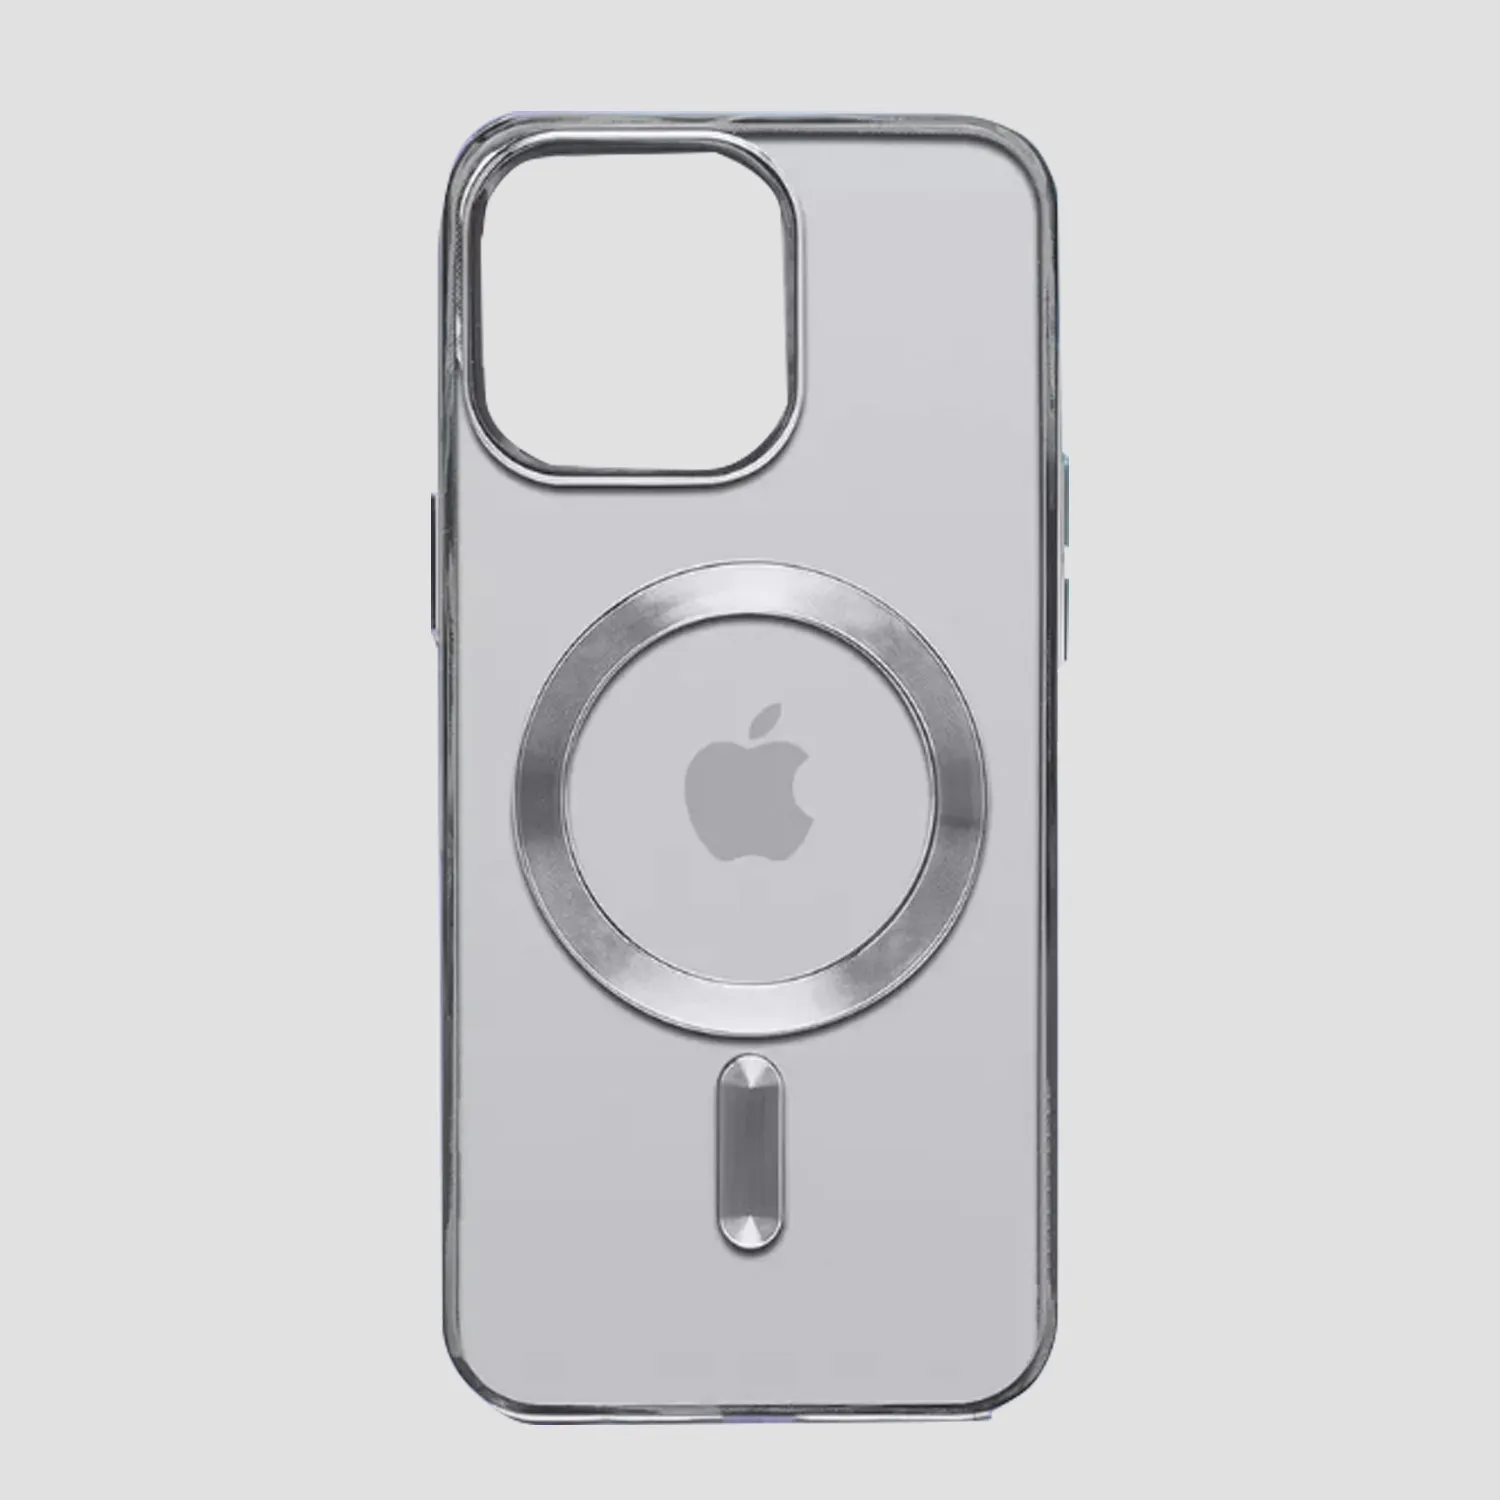 Чехол прозрачный силиконовый для Apple iPhone 14, iPhone 13 с MagSafe (серебристый)